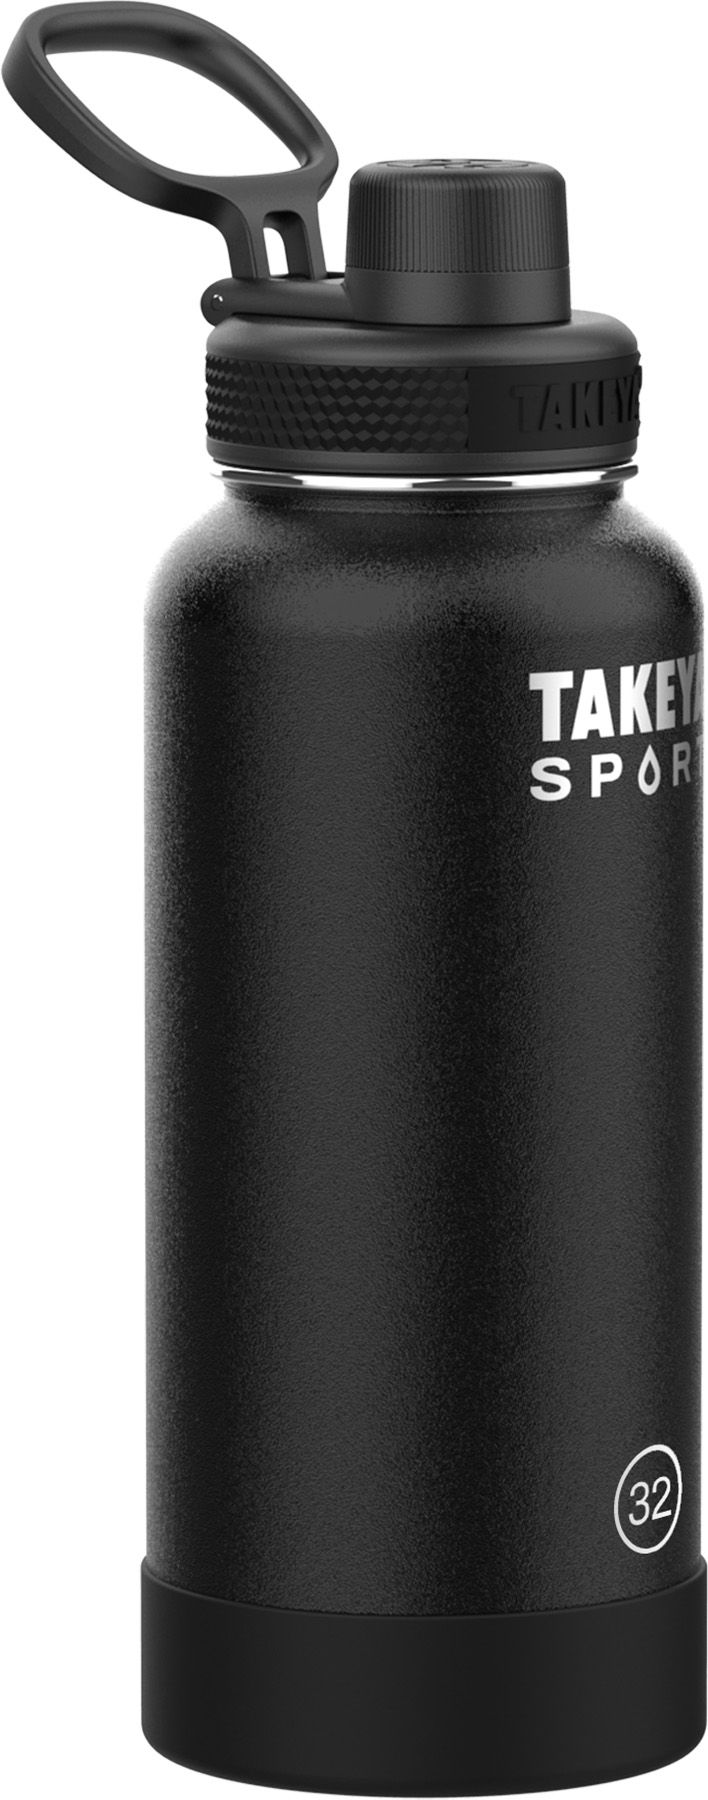 Takeya Sport 32 oz. Water Bottle with Spout Lid